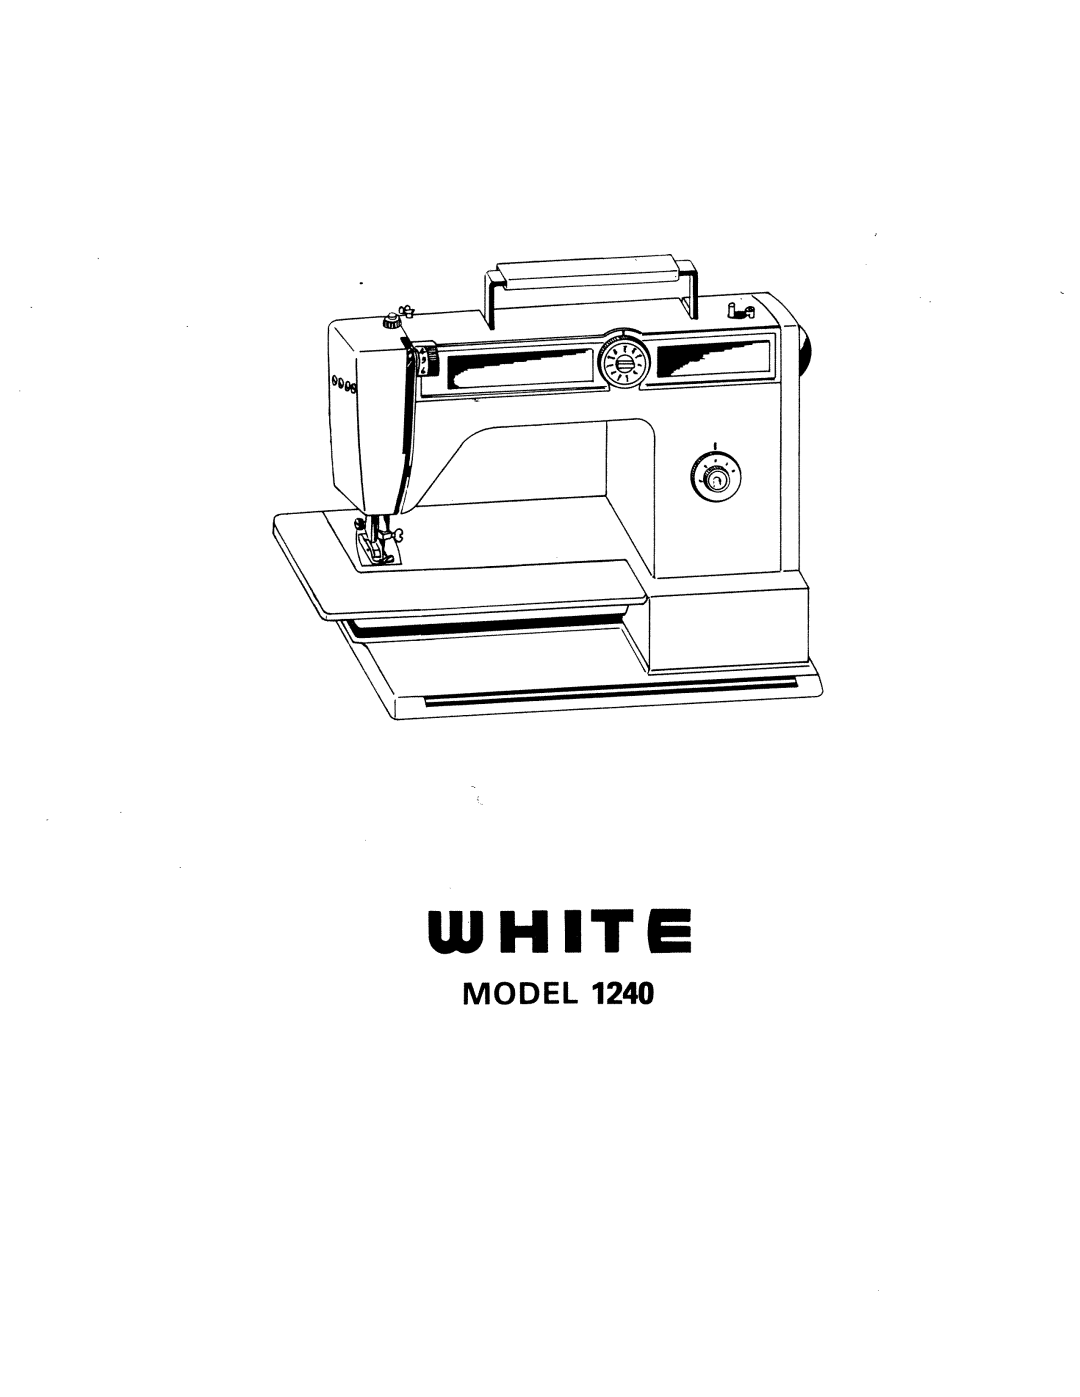 White 1240 manual 